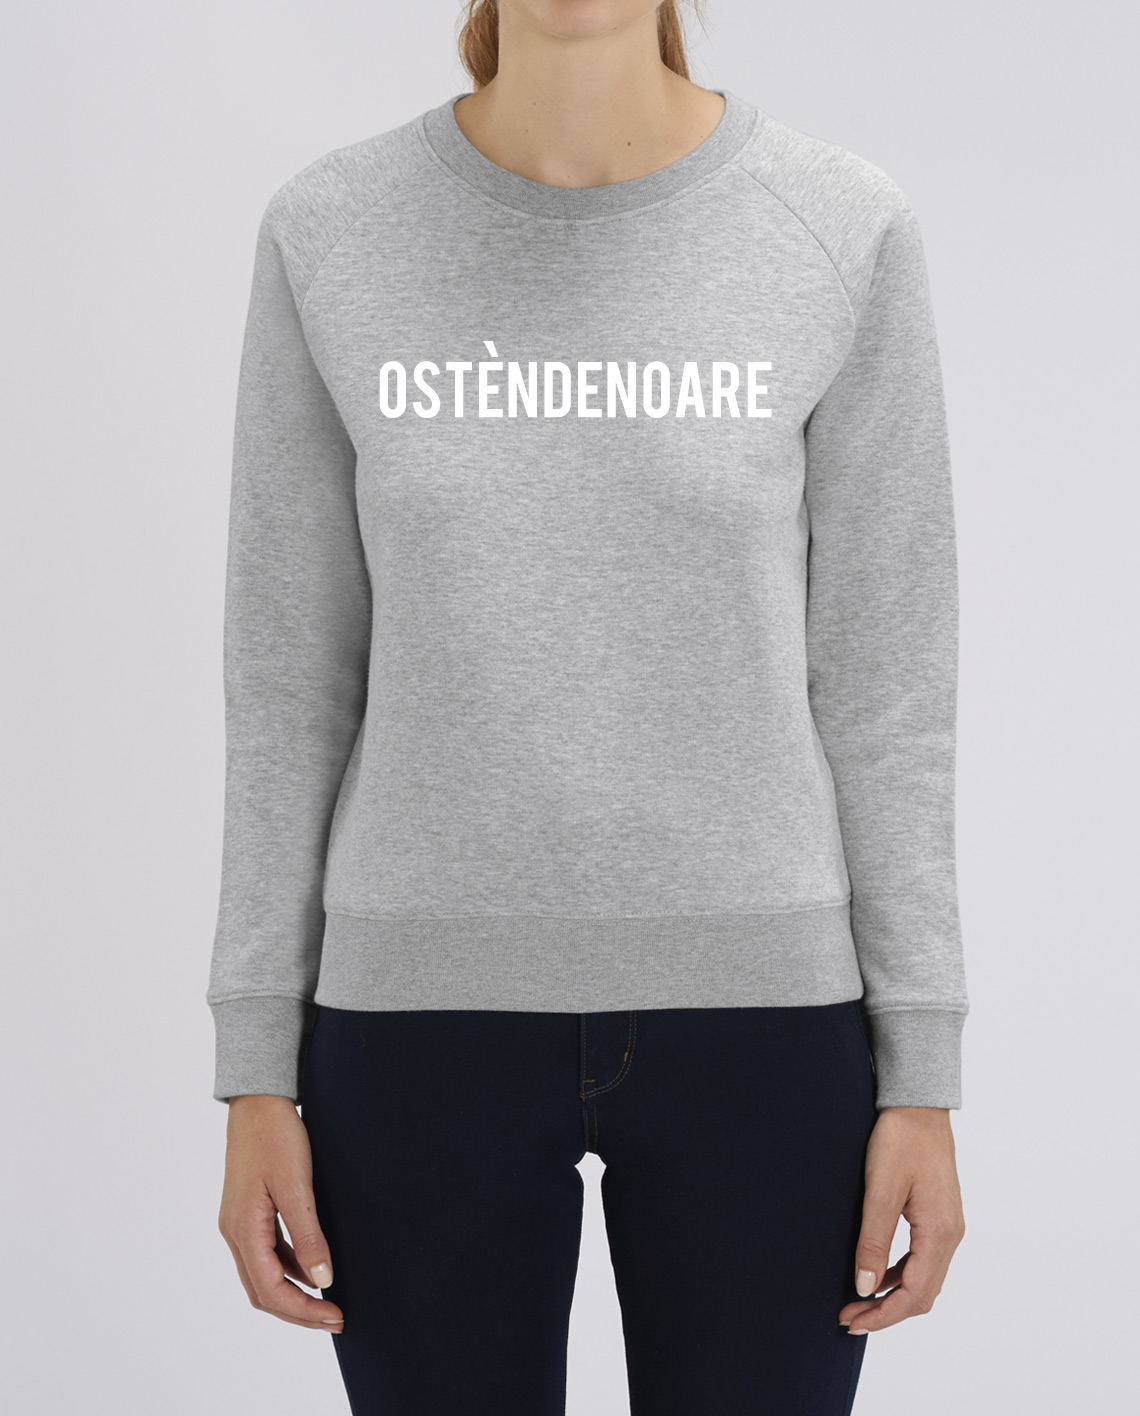 Zee de ober Hoogland Sweater Ostèndenoare (M/V) online kopen bij Intdialect.com - Intdialect >>